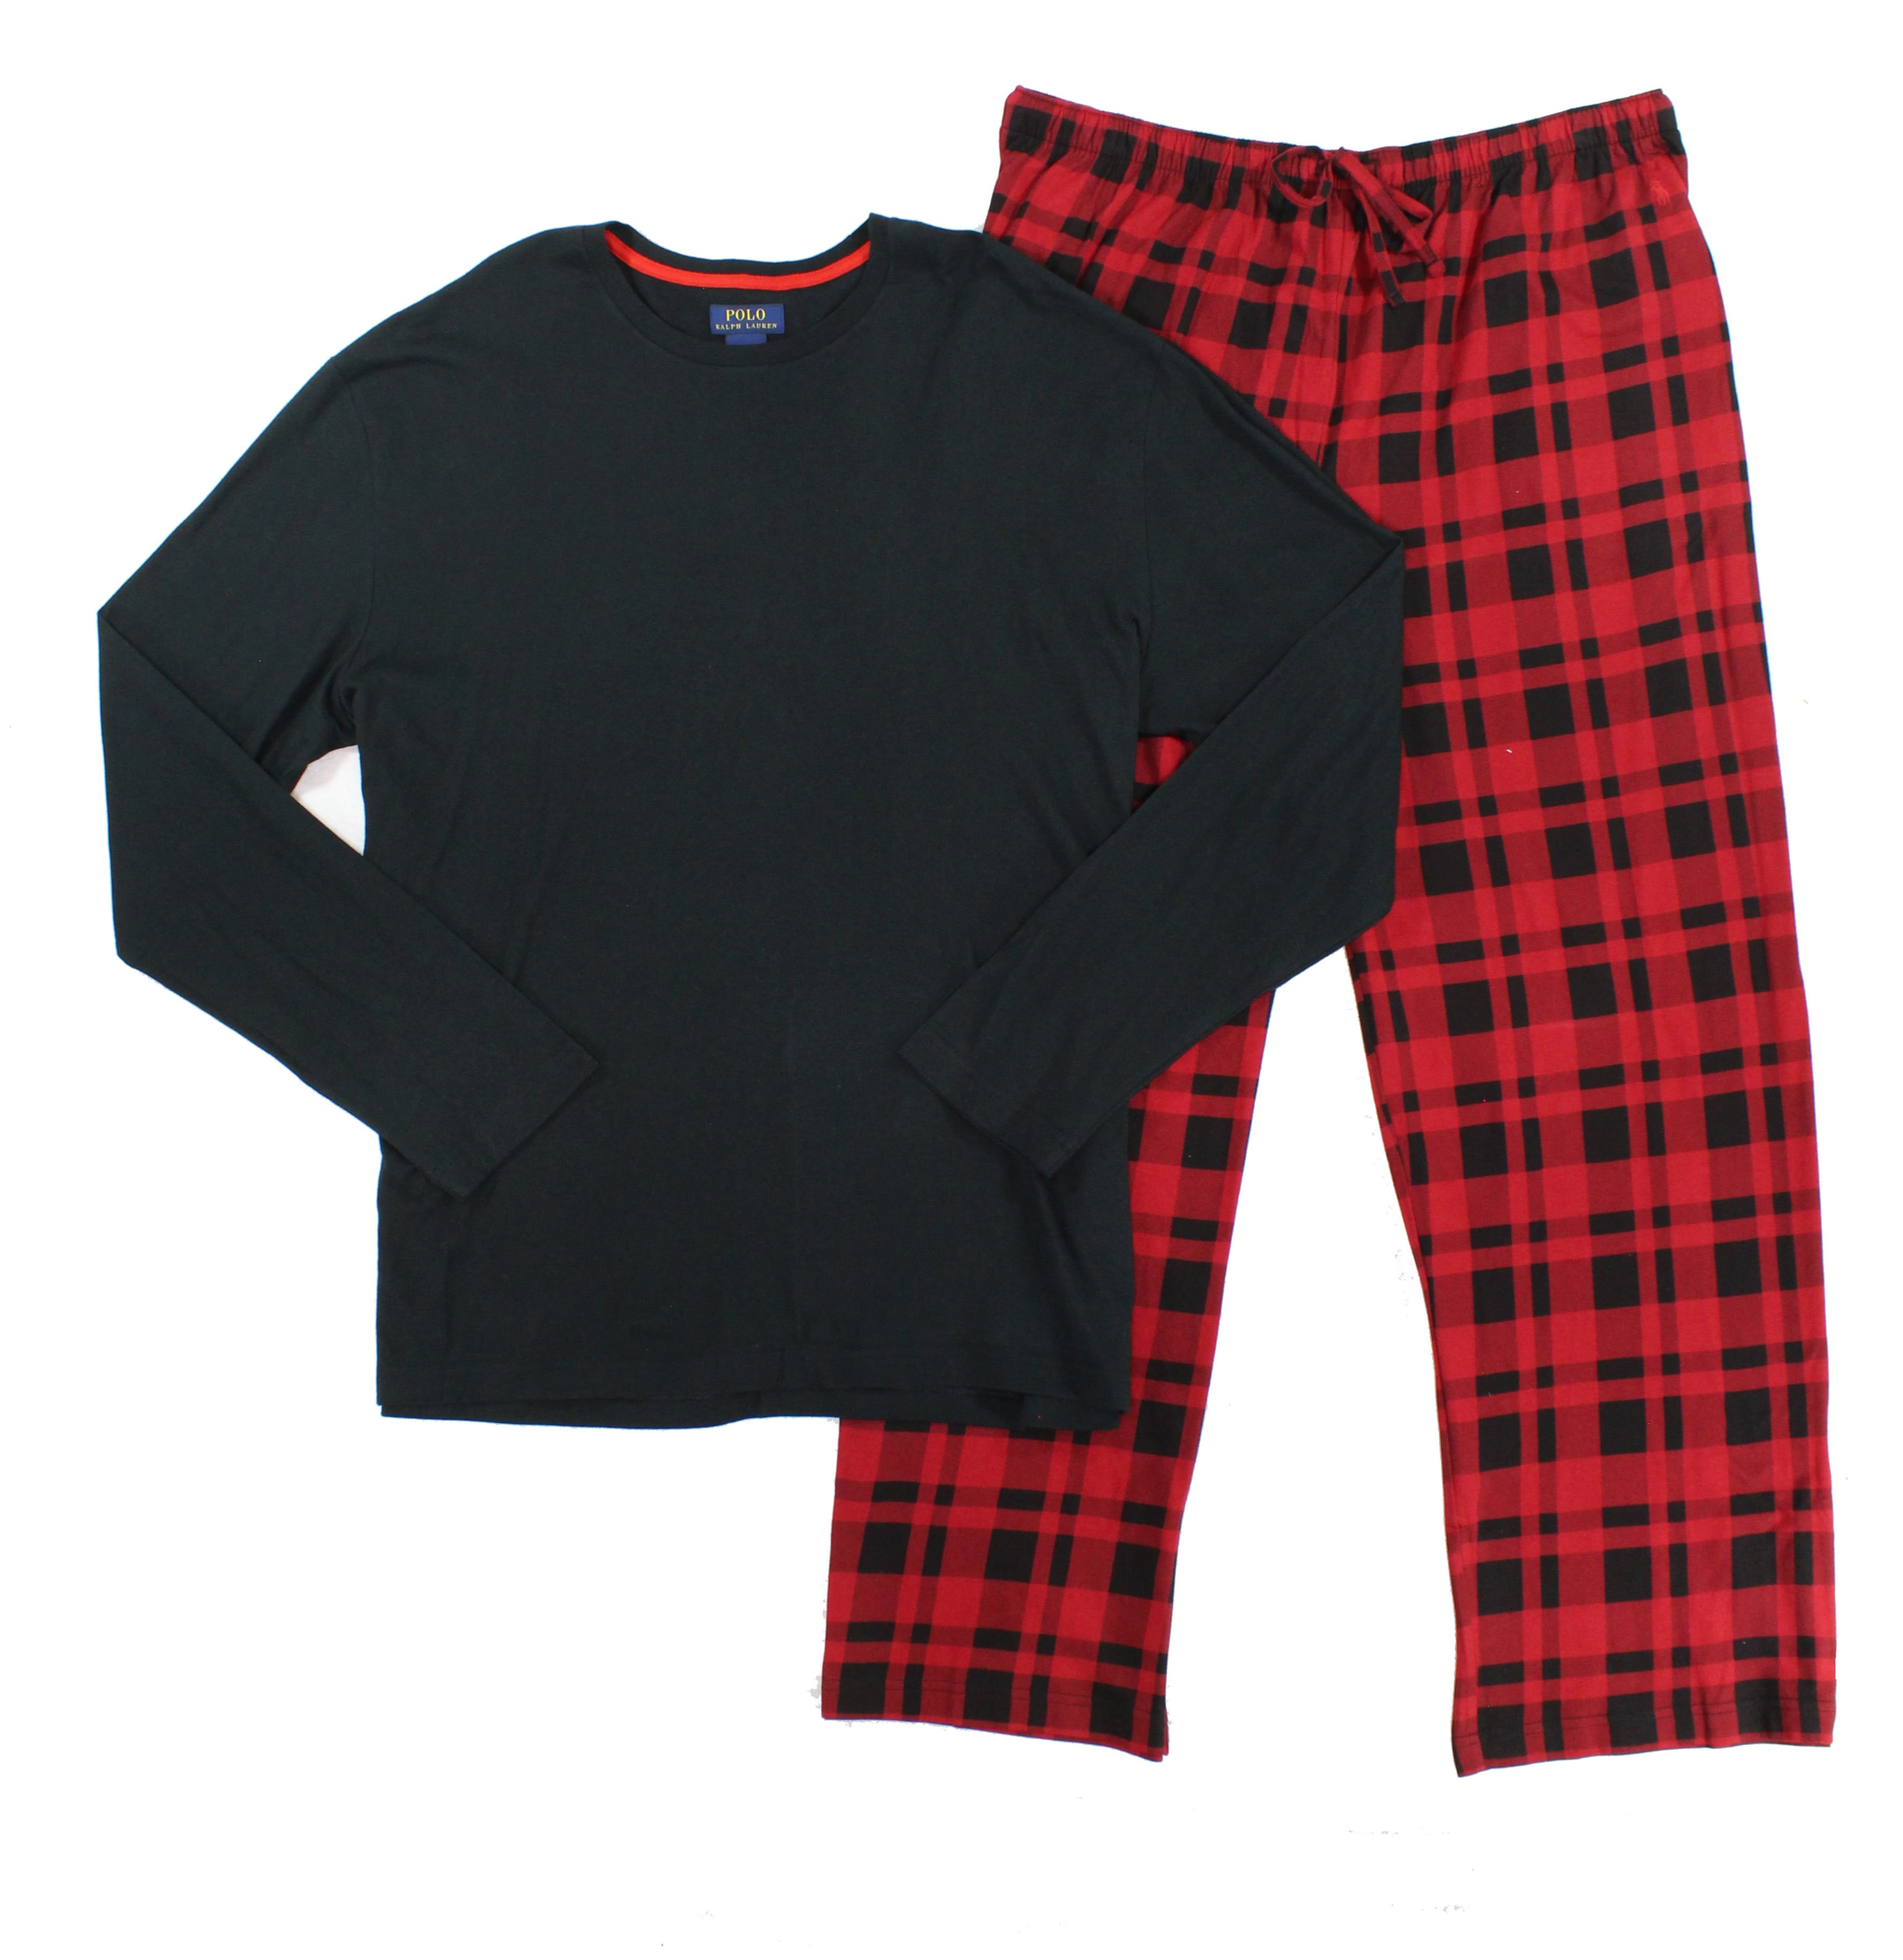 Polo Ralph Lauren - Polo Ralph Lauren NEW Black Red Mens Size XL Woven